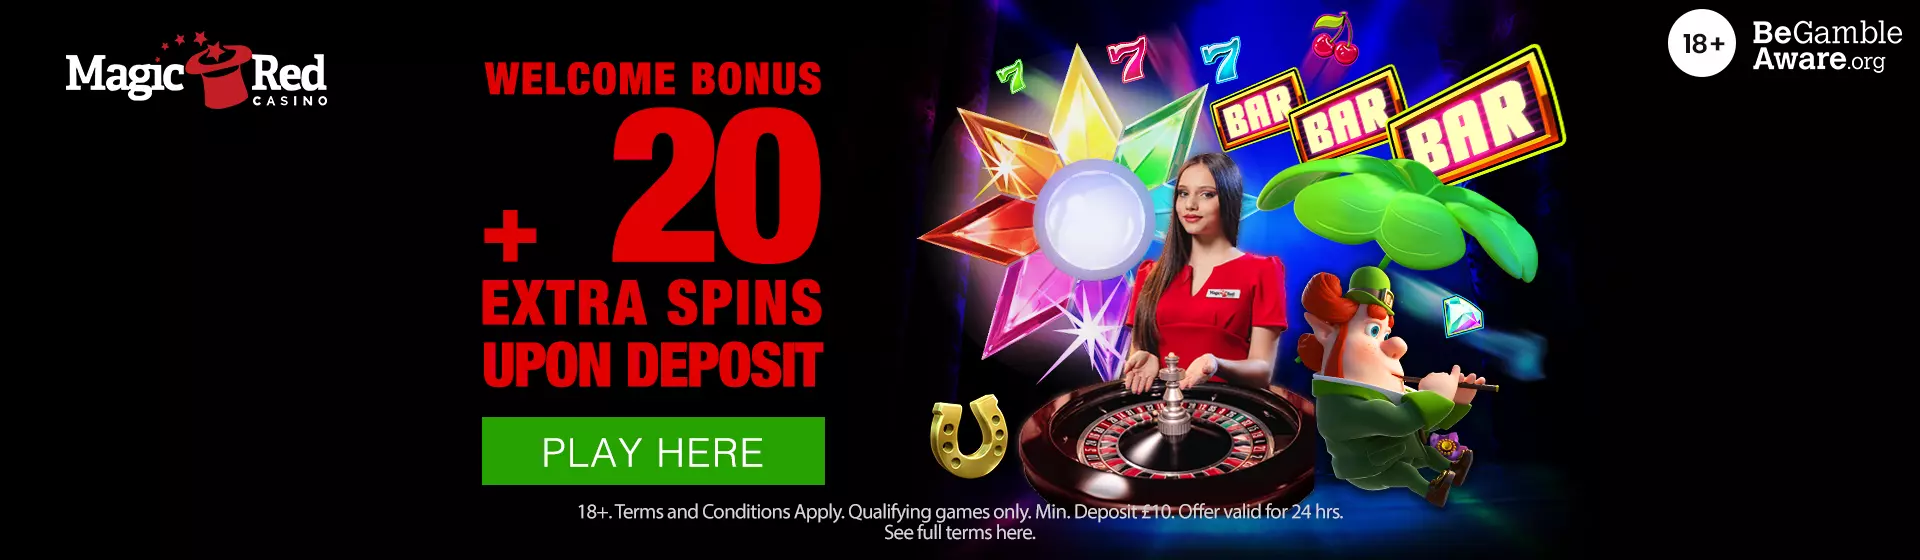 magicred casino bonus